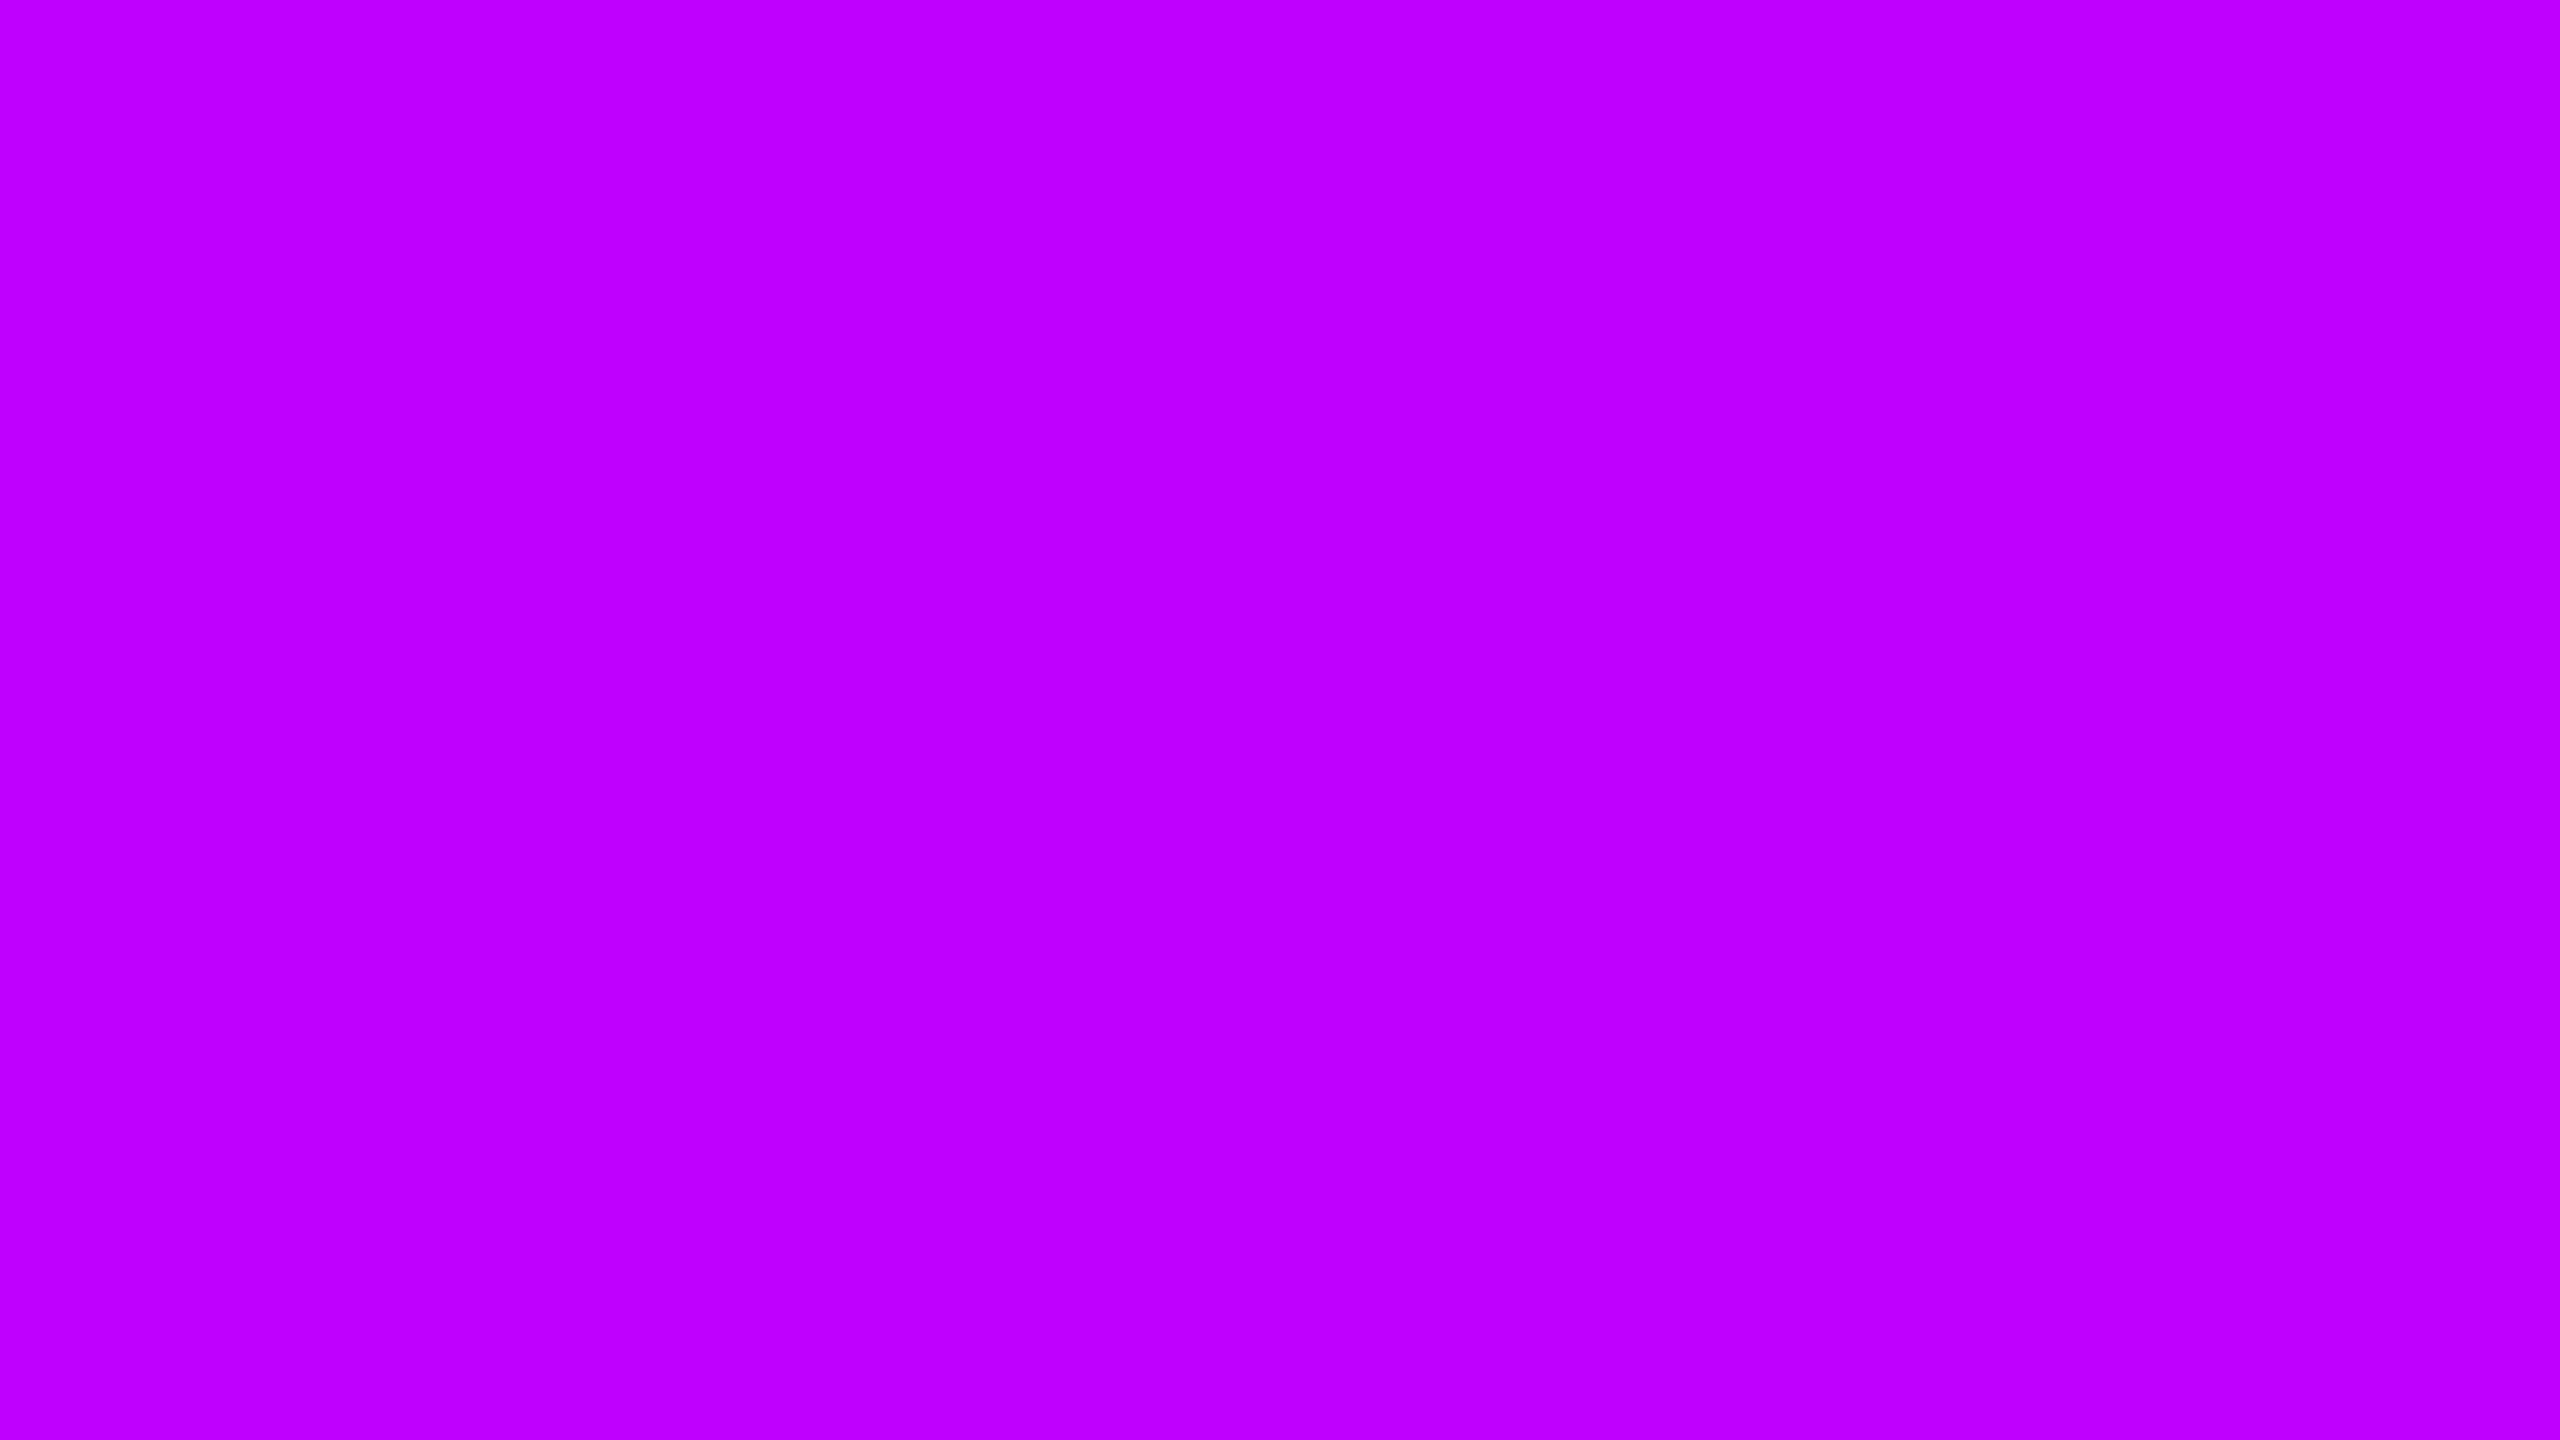 Nền tường màu tím (Purple wallpaper): “Bạn yêu thích sự huyền bí và đẳng cấp? Hãy ngắm nhìn ngay hình ảnh nền tường màu tím tuyệt đẹp. Với nền tường này, không gian sống của bạn sẽ trở nên độc đáo và quý phái hơn bao giờ hết. Hãy để màu tím cuốn hút bạn vào một thế giới mộng mơ và đầy ấn tượng.”